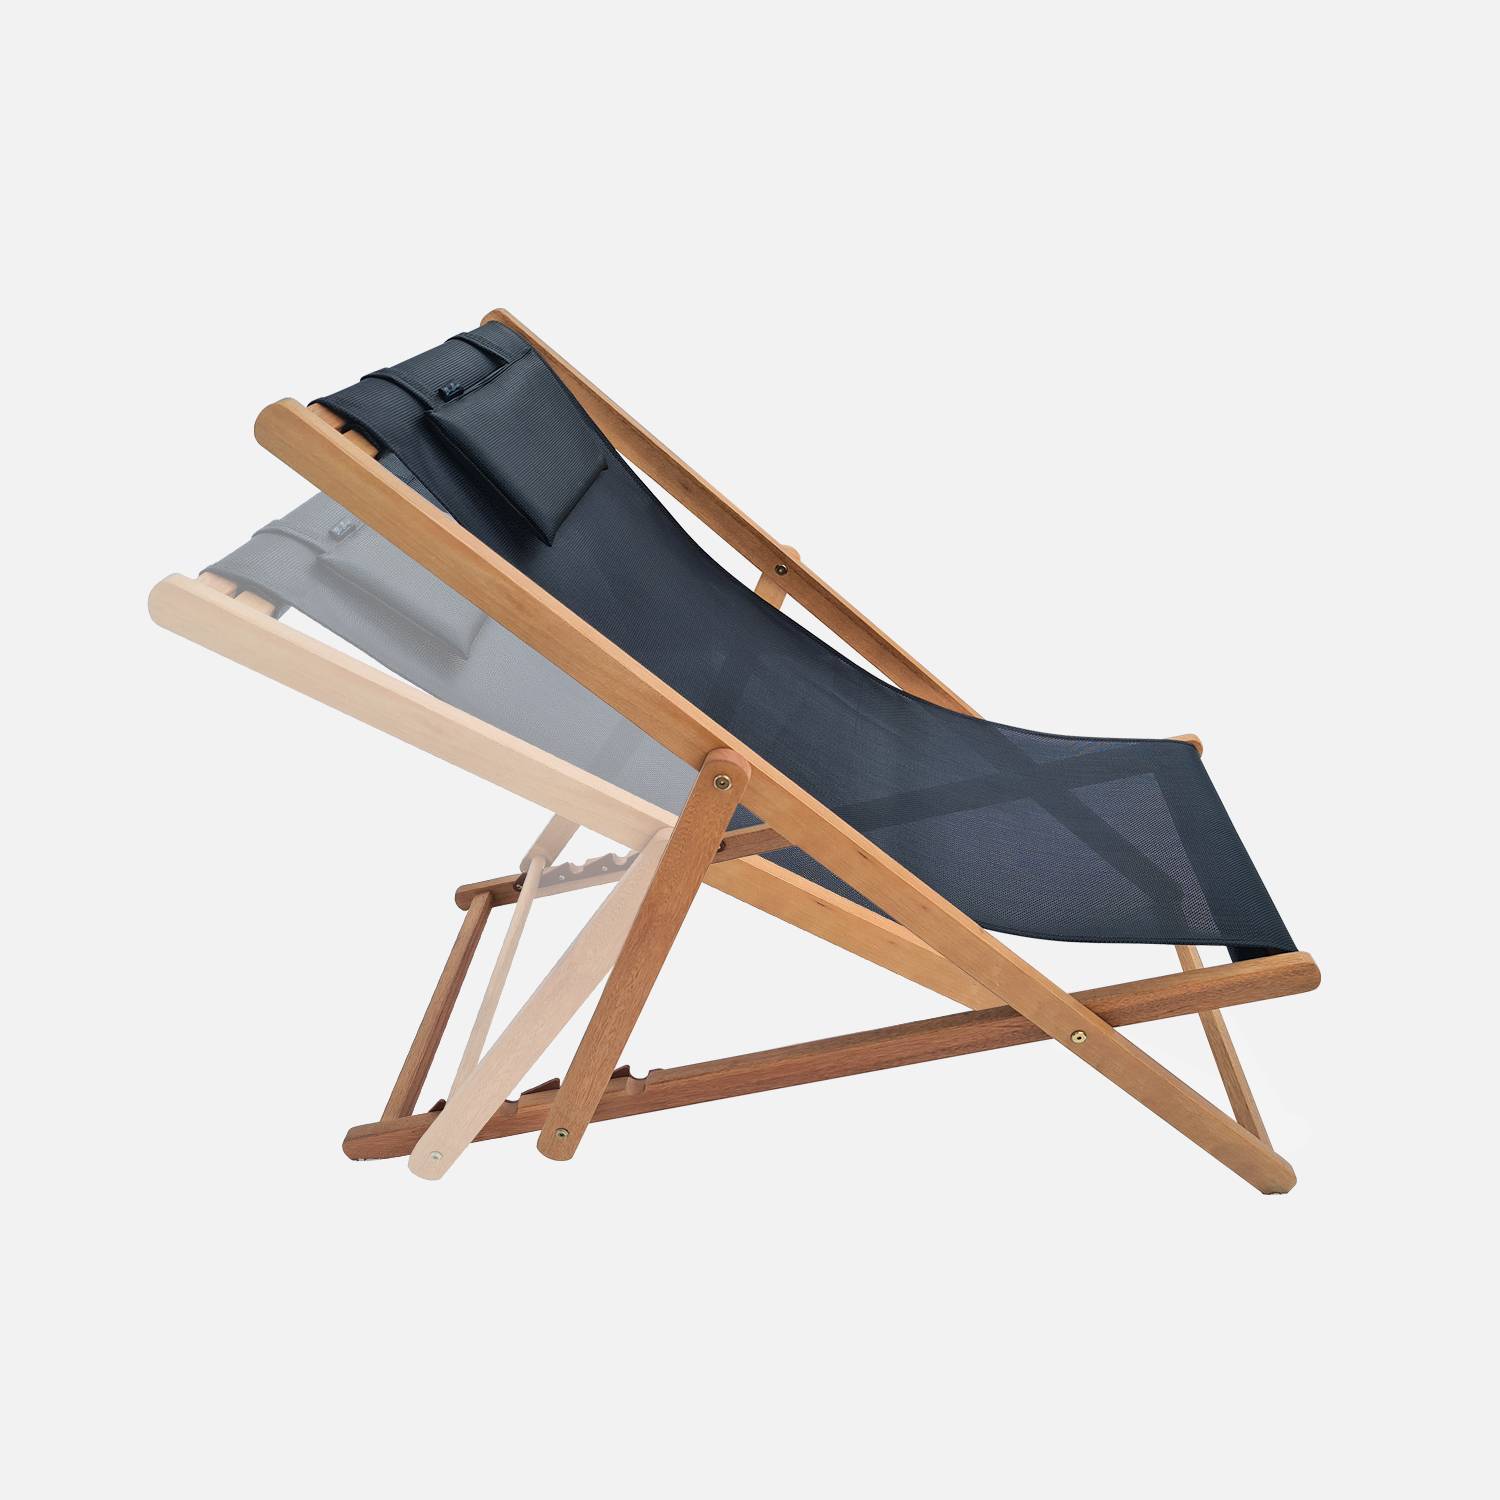 Sedie di legno - Creus - 2 sedie a sdraio in legno di eucalipto FSC oliato con cuscino poggiatesta nero Photo3